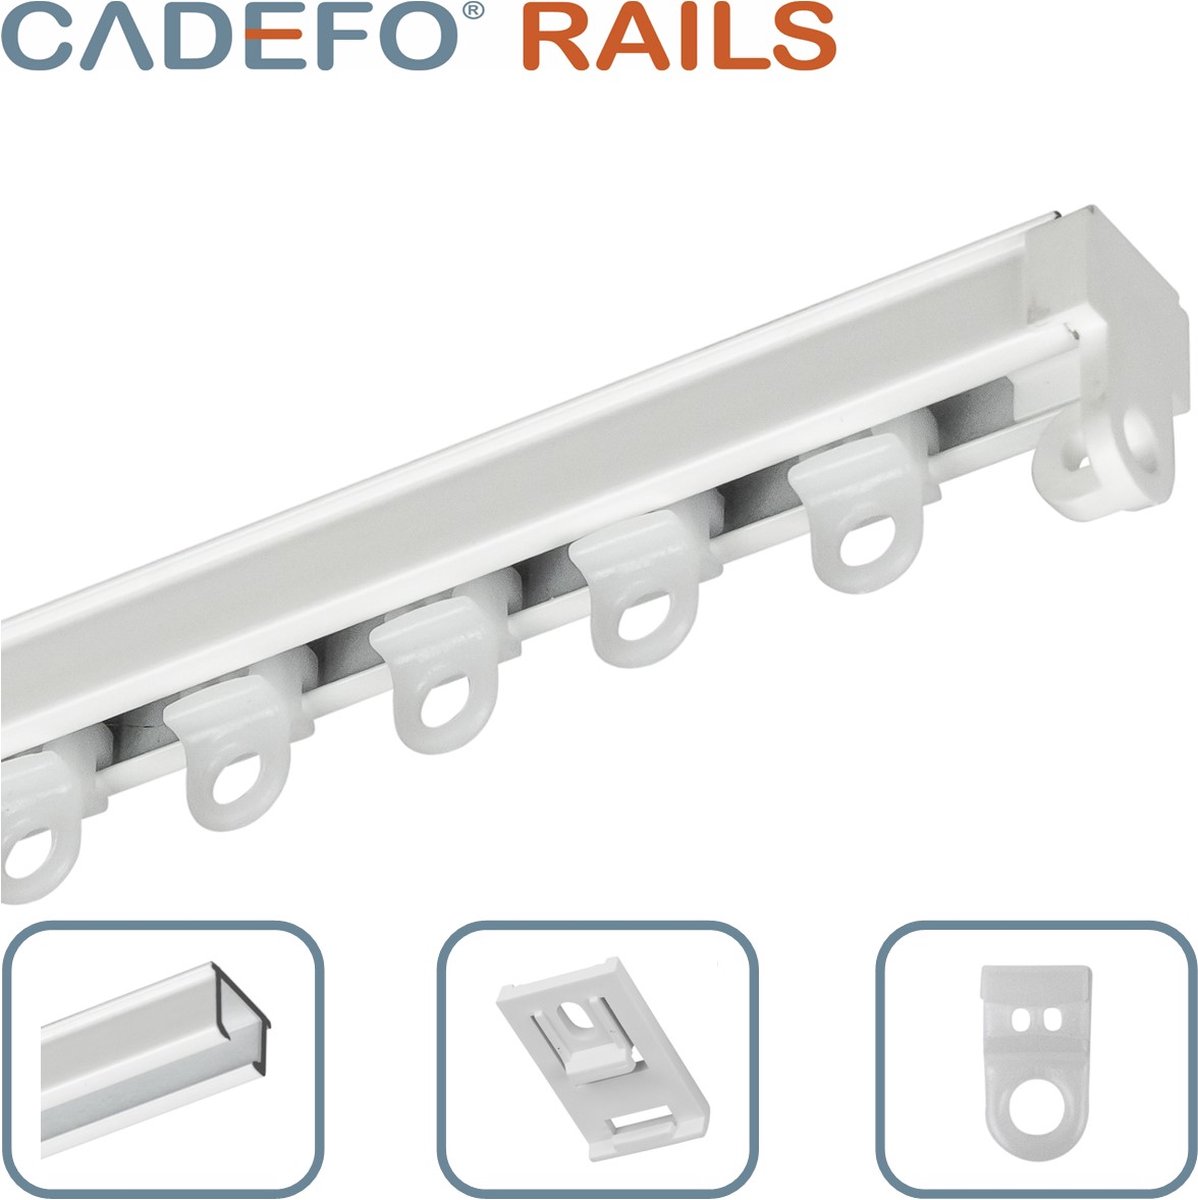 CADEFO RAILS (151 - 200 cm) Gordijnrails - Compleet op maat! - UIT 1 STUK - Leverbaar tot 6 meter - Plafondbevestiging - Lengte 170 cm